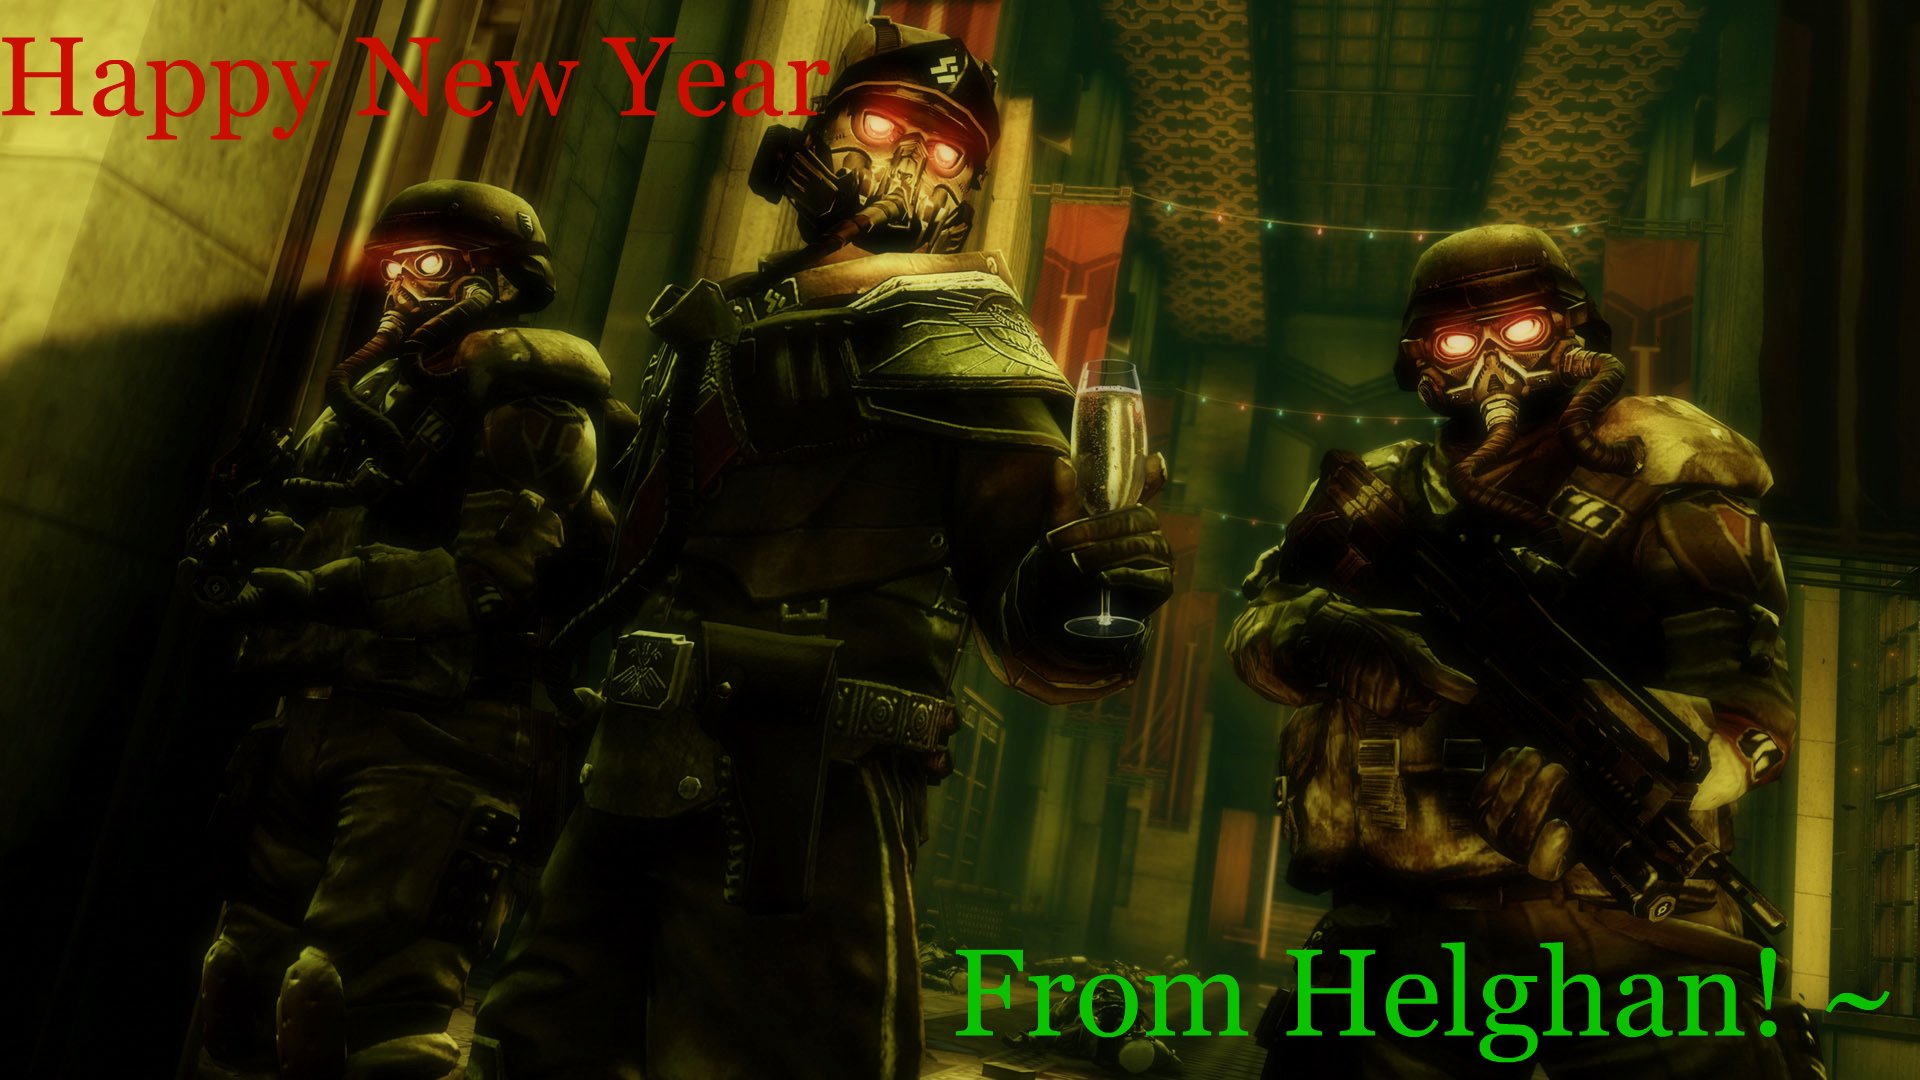 Colonel Radec: Happy New Year